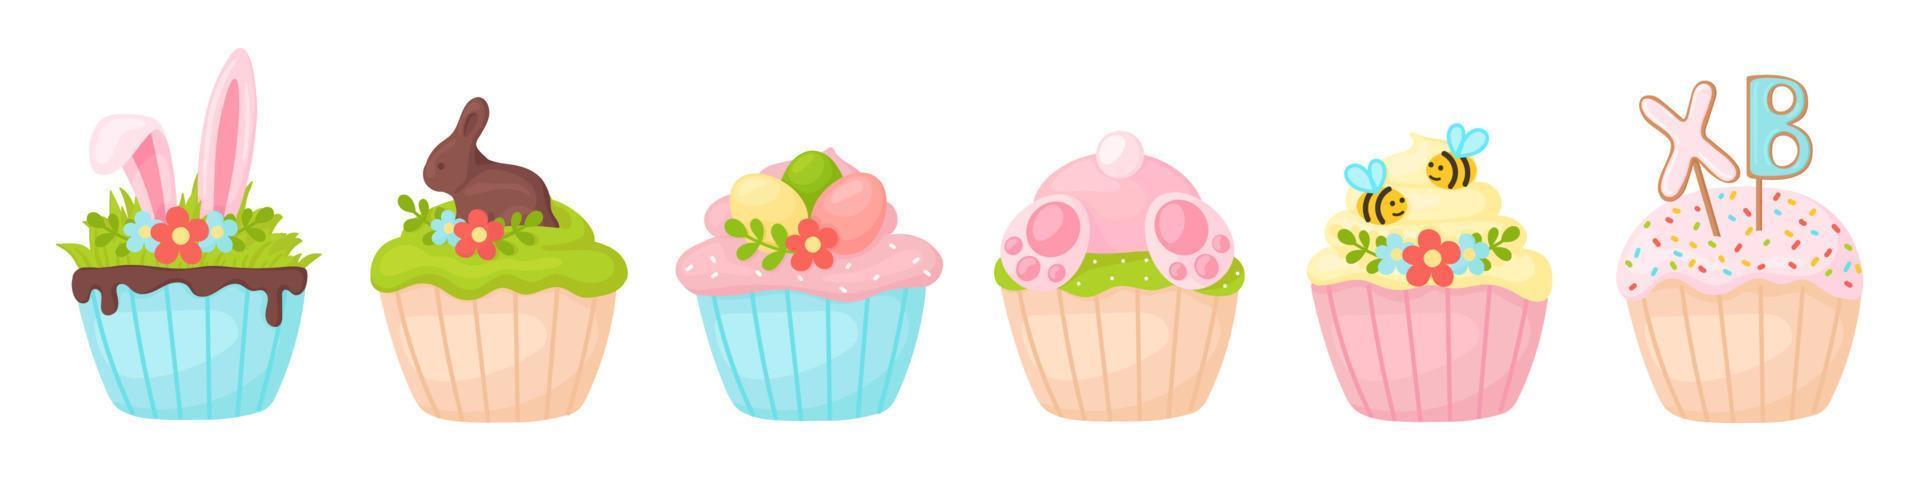 söta påsk cupcakes av pastellfärger i tecknad stil vektor